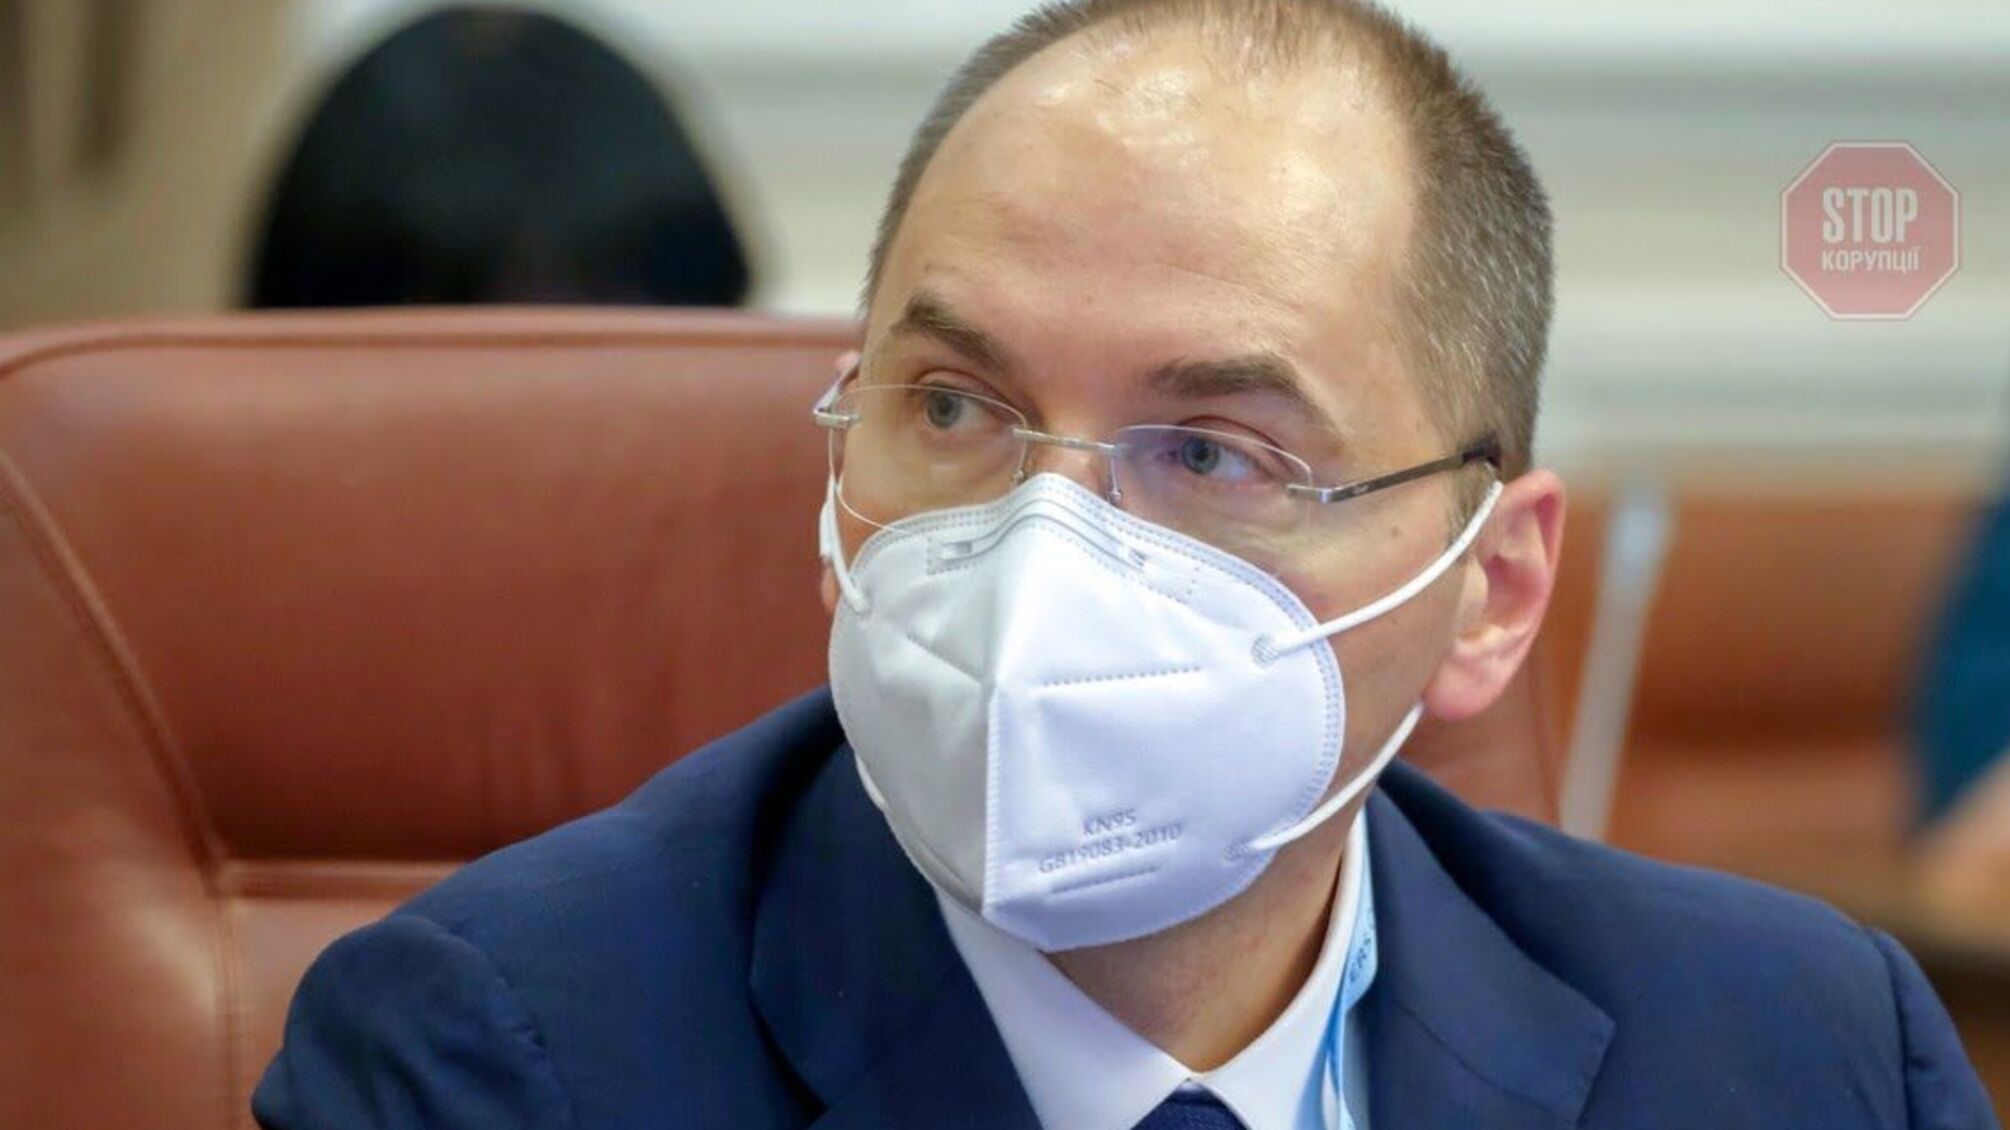 Він підриває репутацію України, — Степанов у відповідь звинуватив очільника ДП “Медзакупівлі”